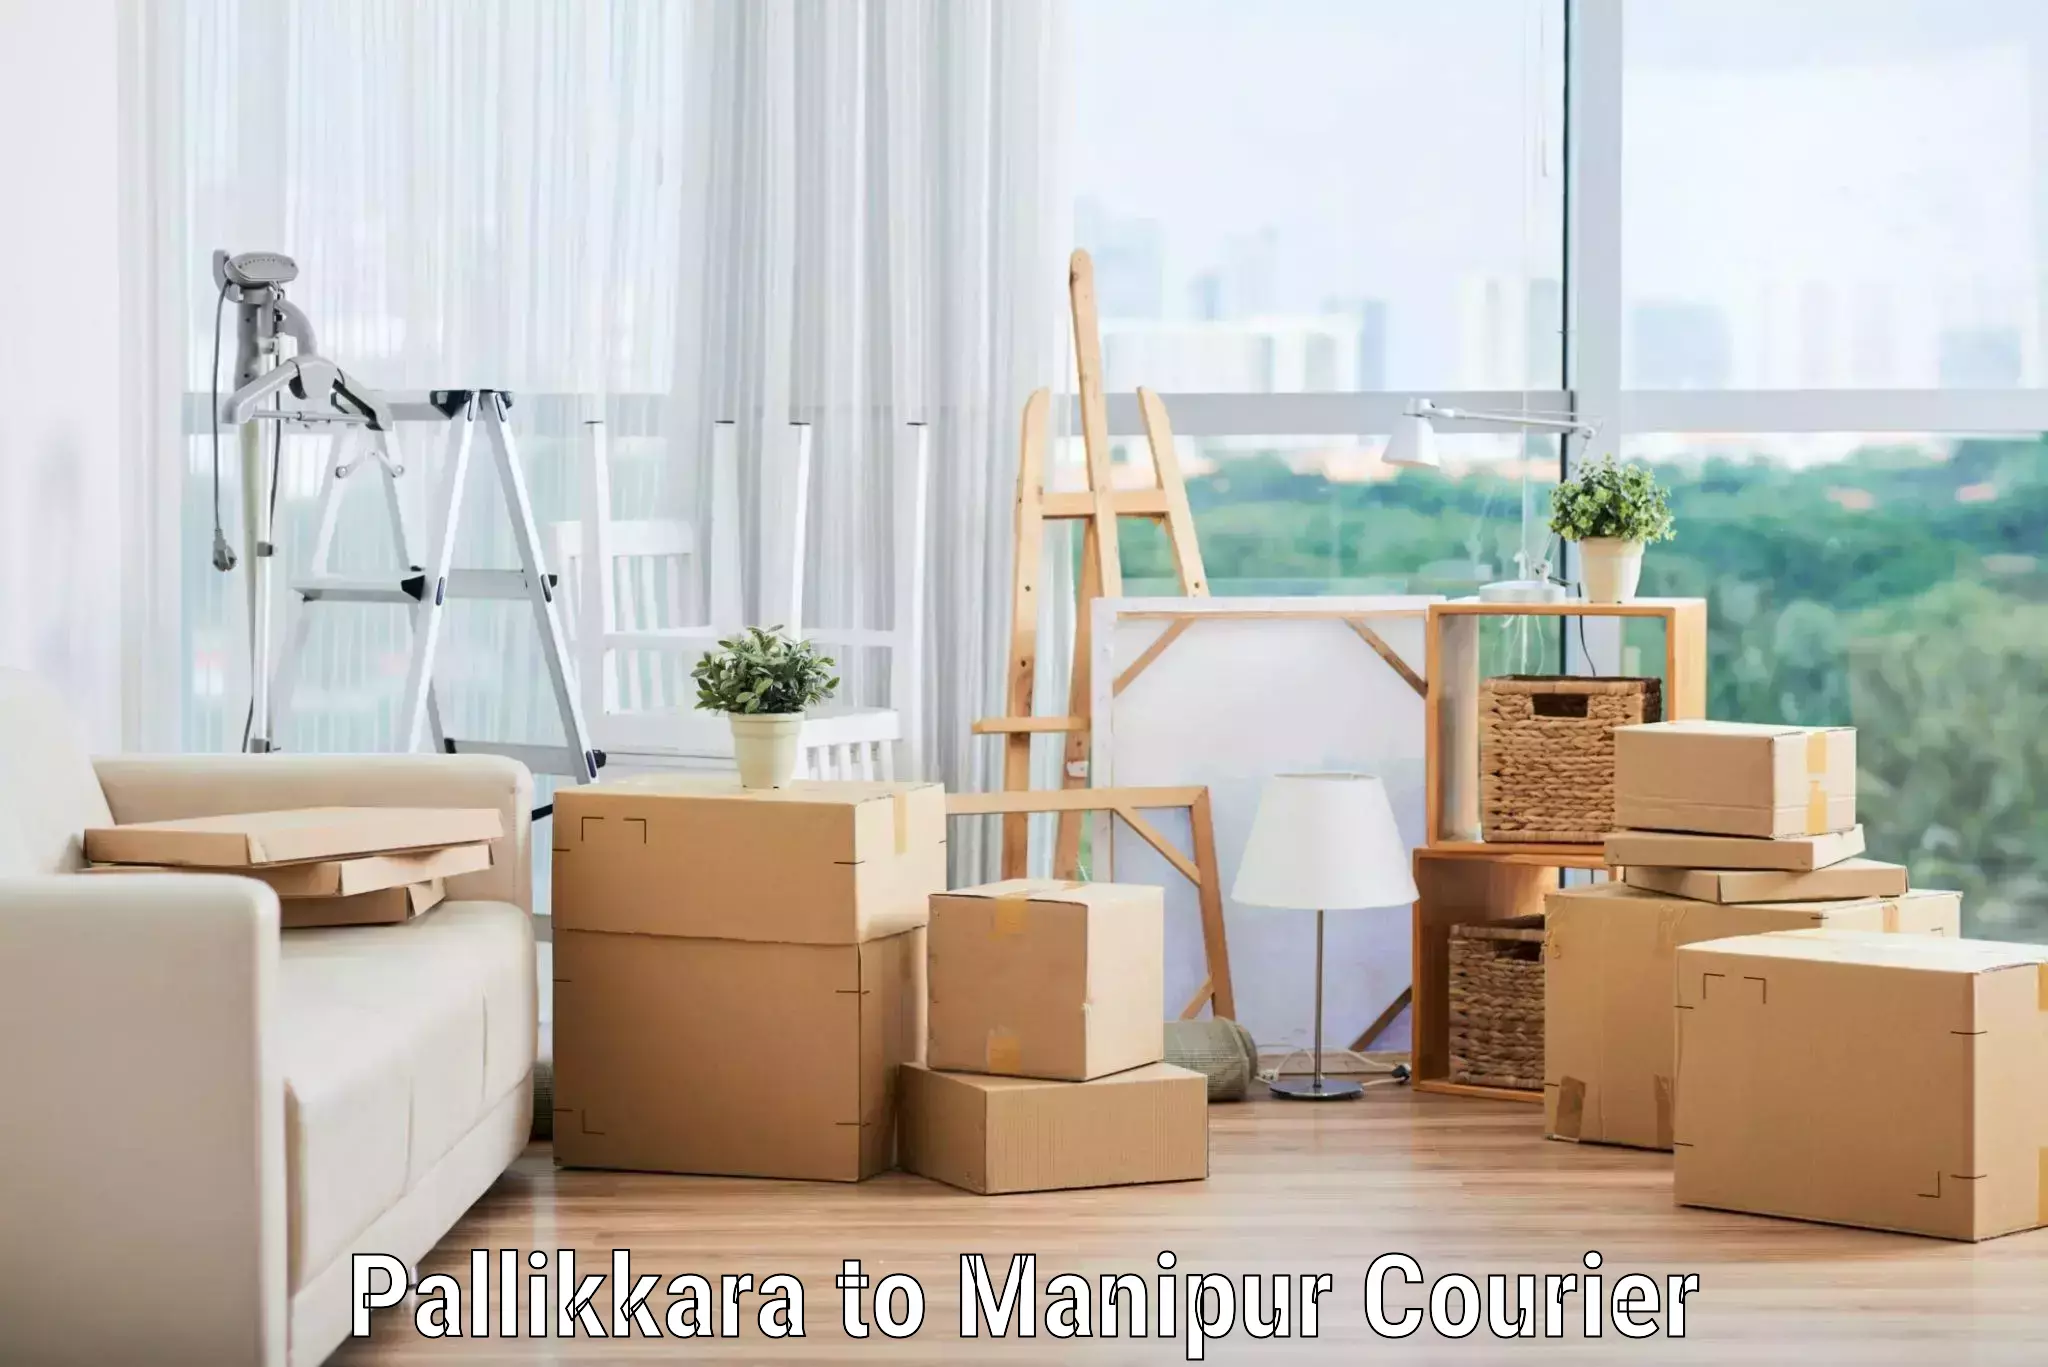 Moving and handling services Pallikkara to Senapati